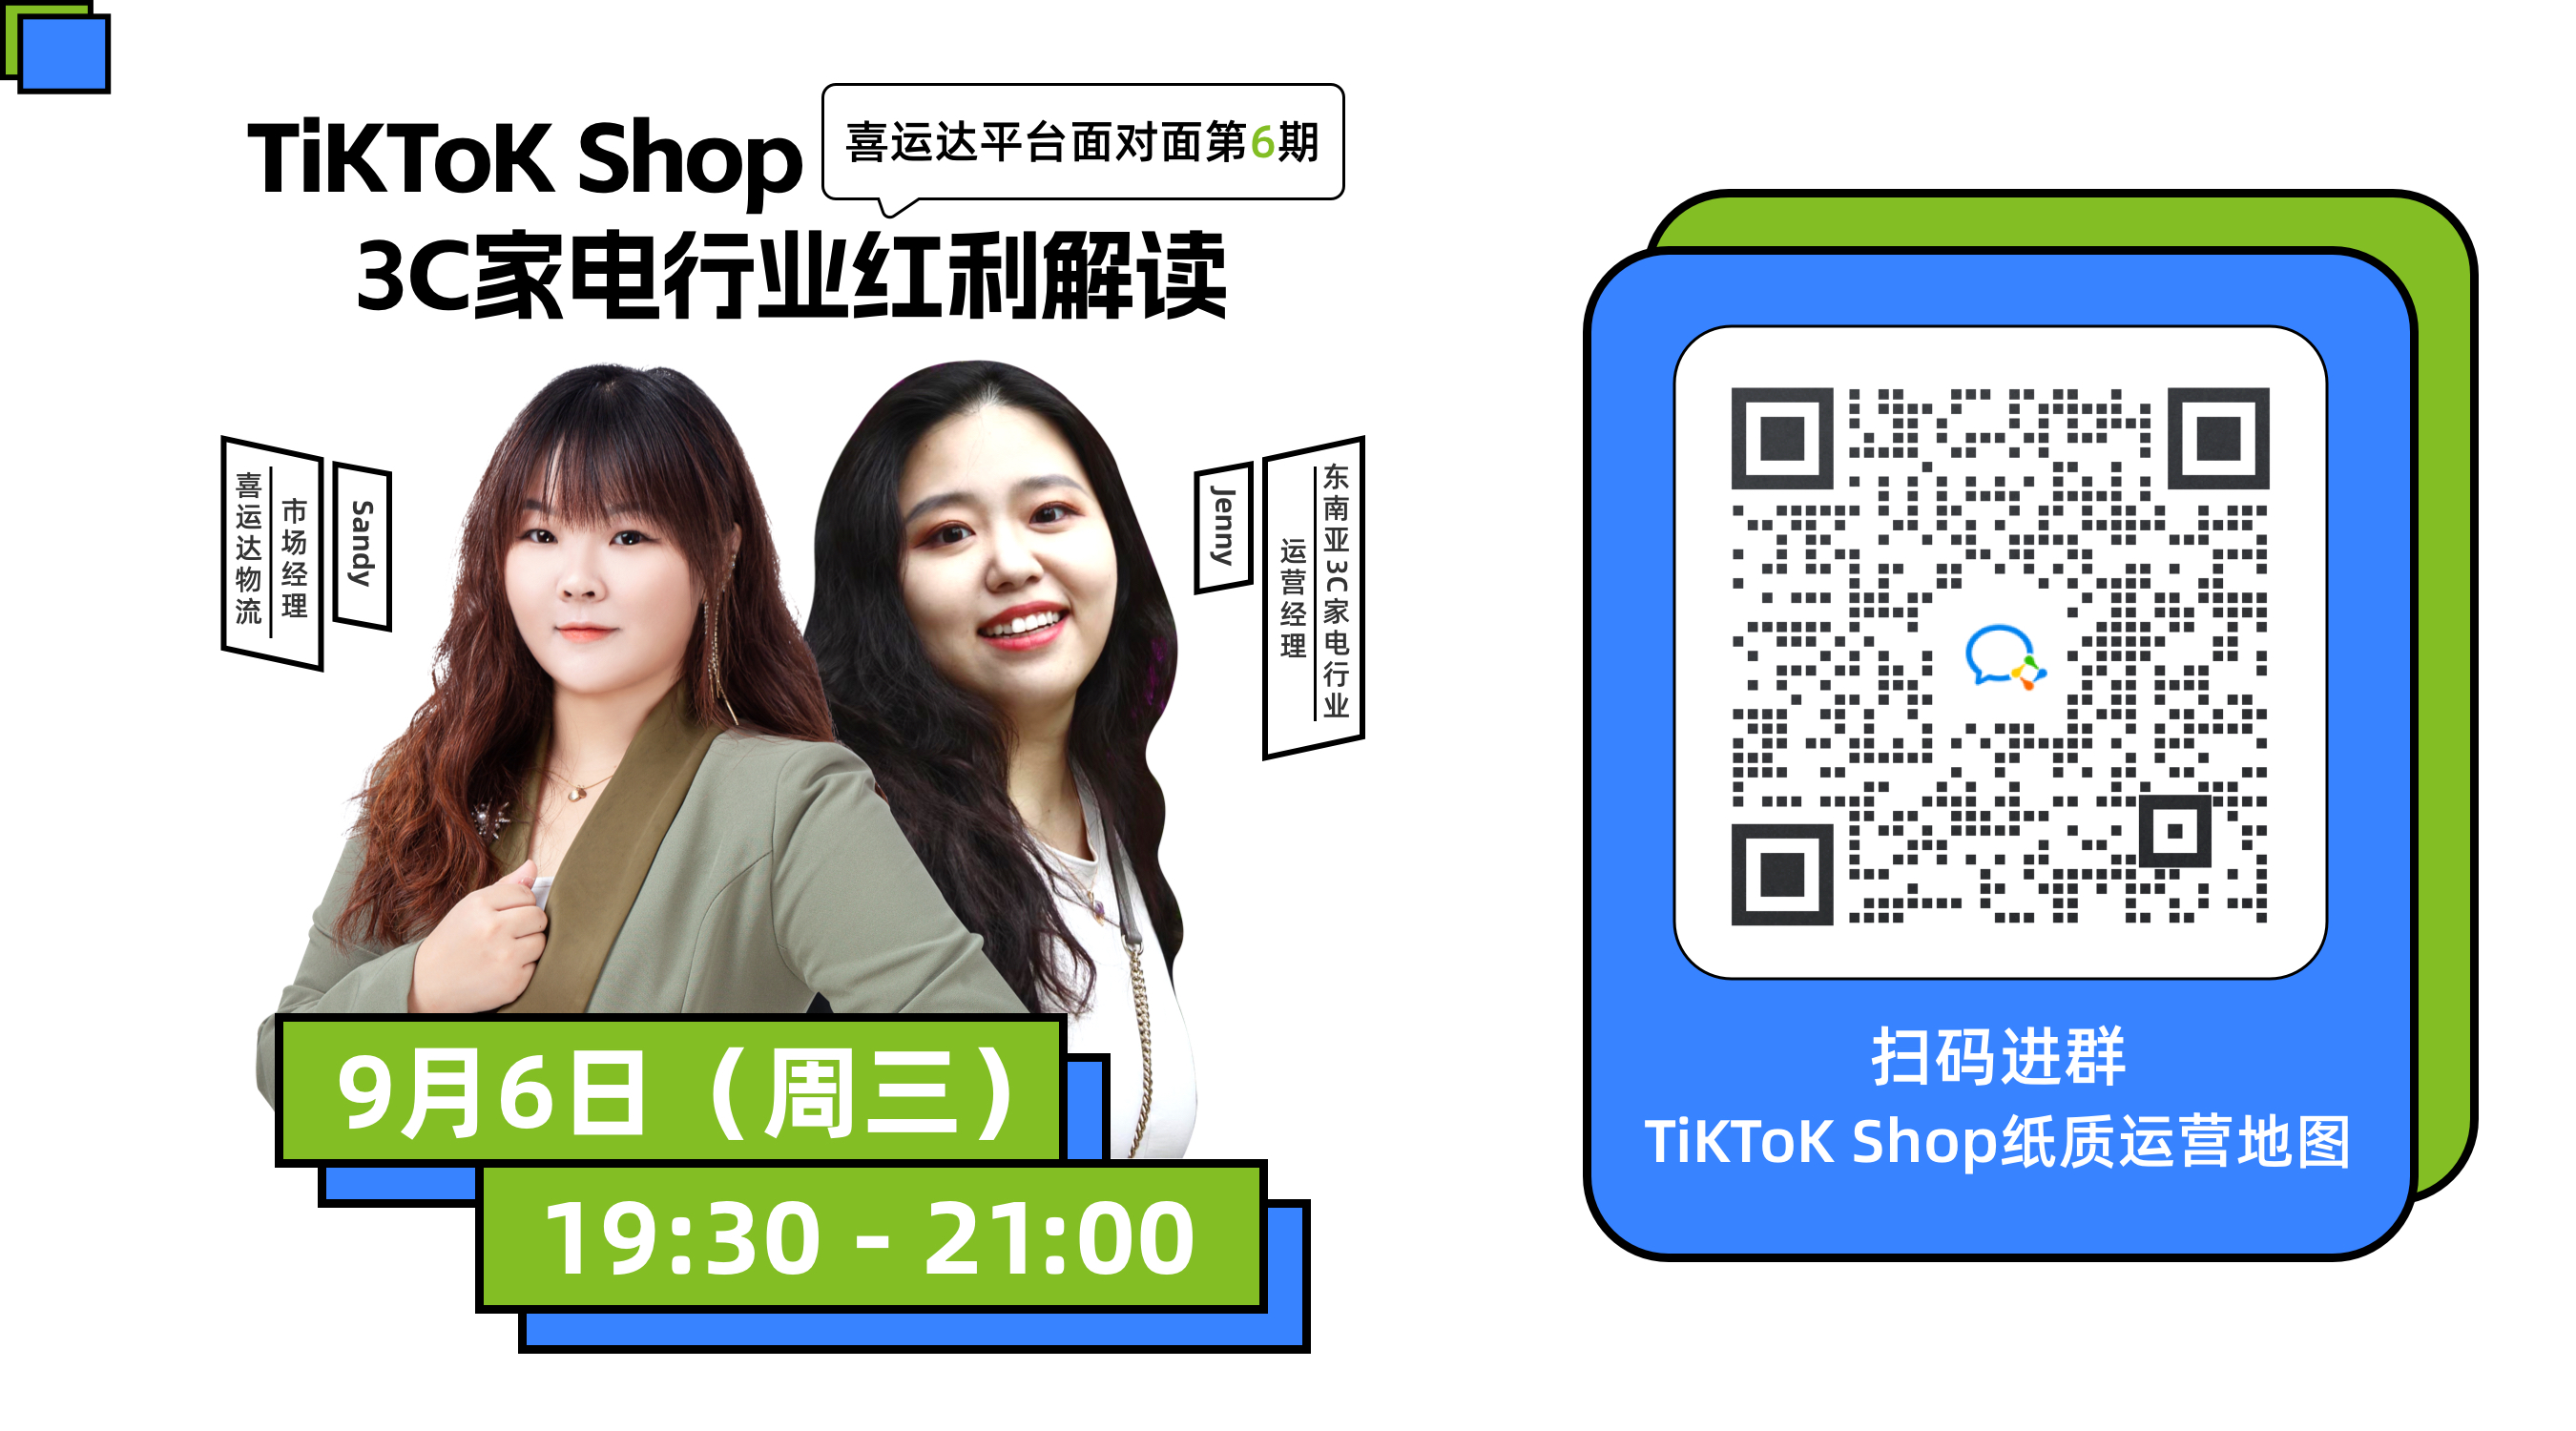 TiKToK Shop印尼本土3C家电行业红利解读